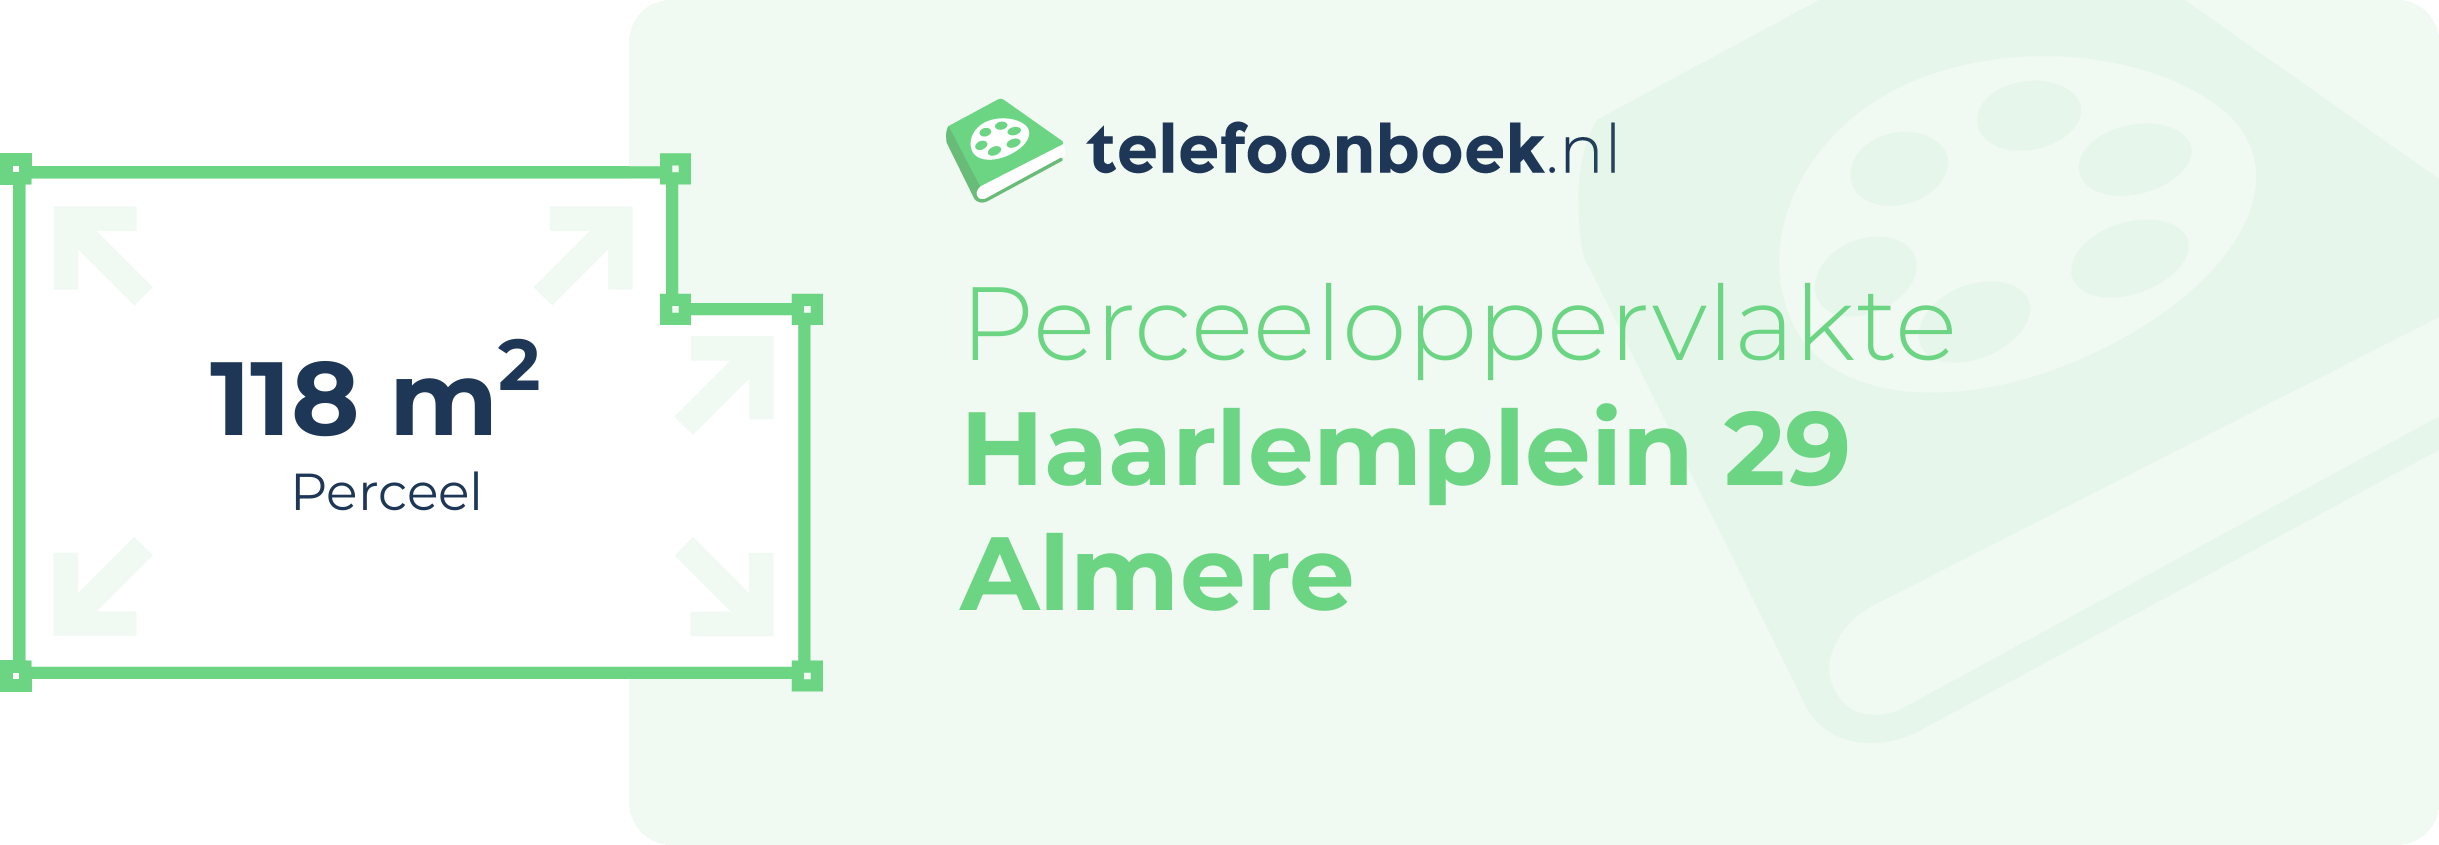 Perceeloppervlakte Haarlemplein 29 Almere